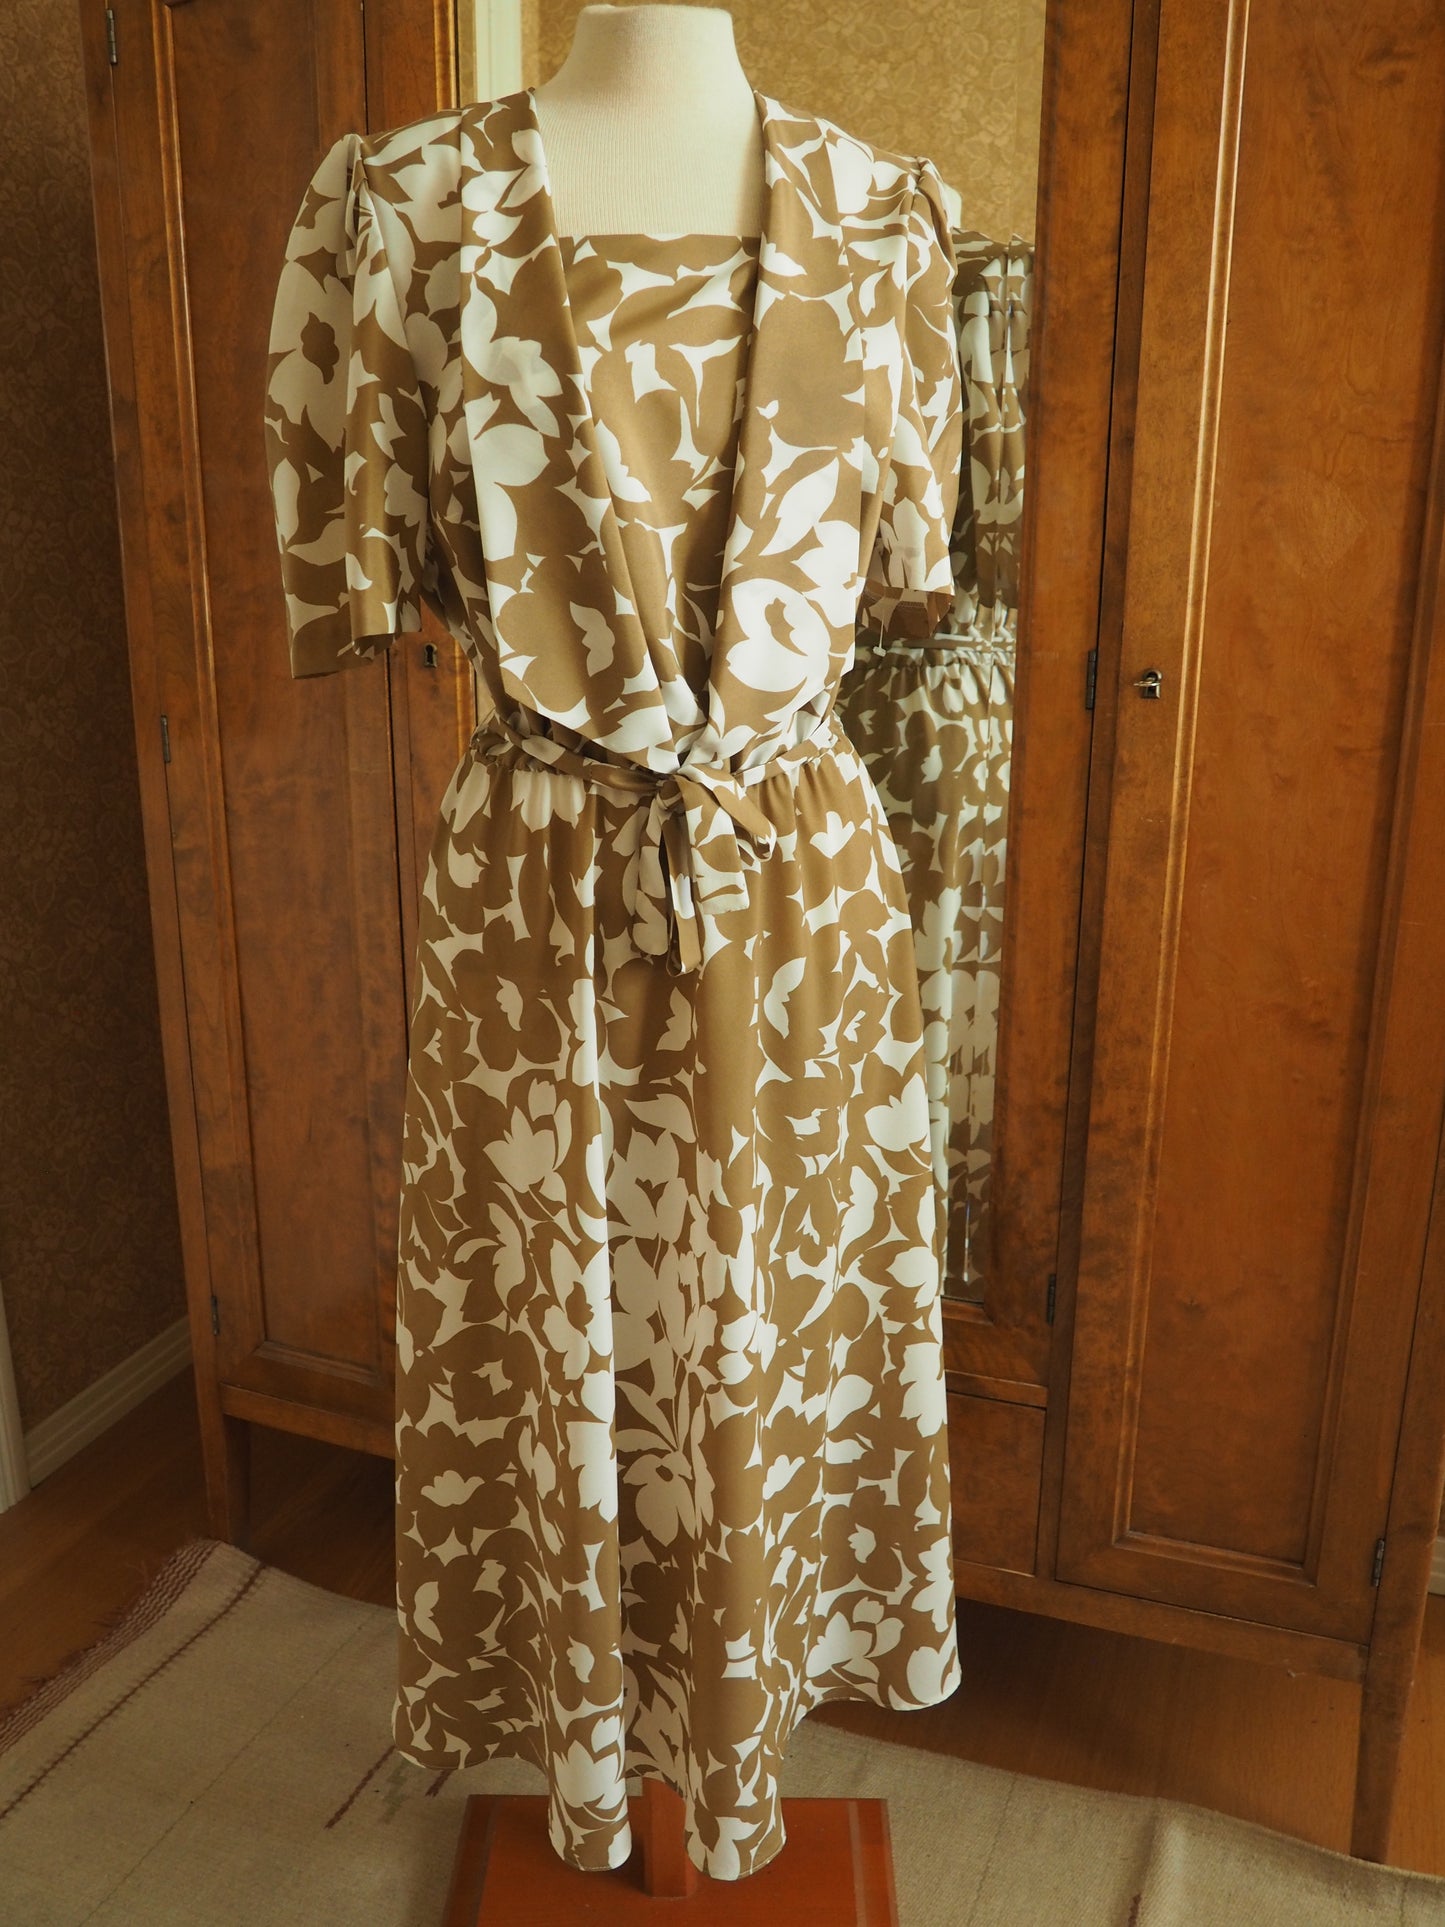 Vaaleanruskea Carolin Muoti-Hovin mekko, käyttämätöntä vanhaa varastoa